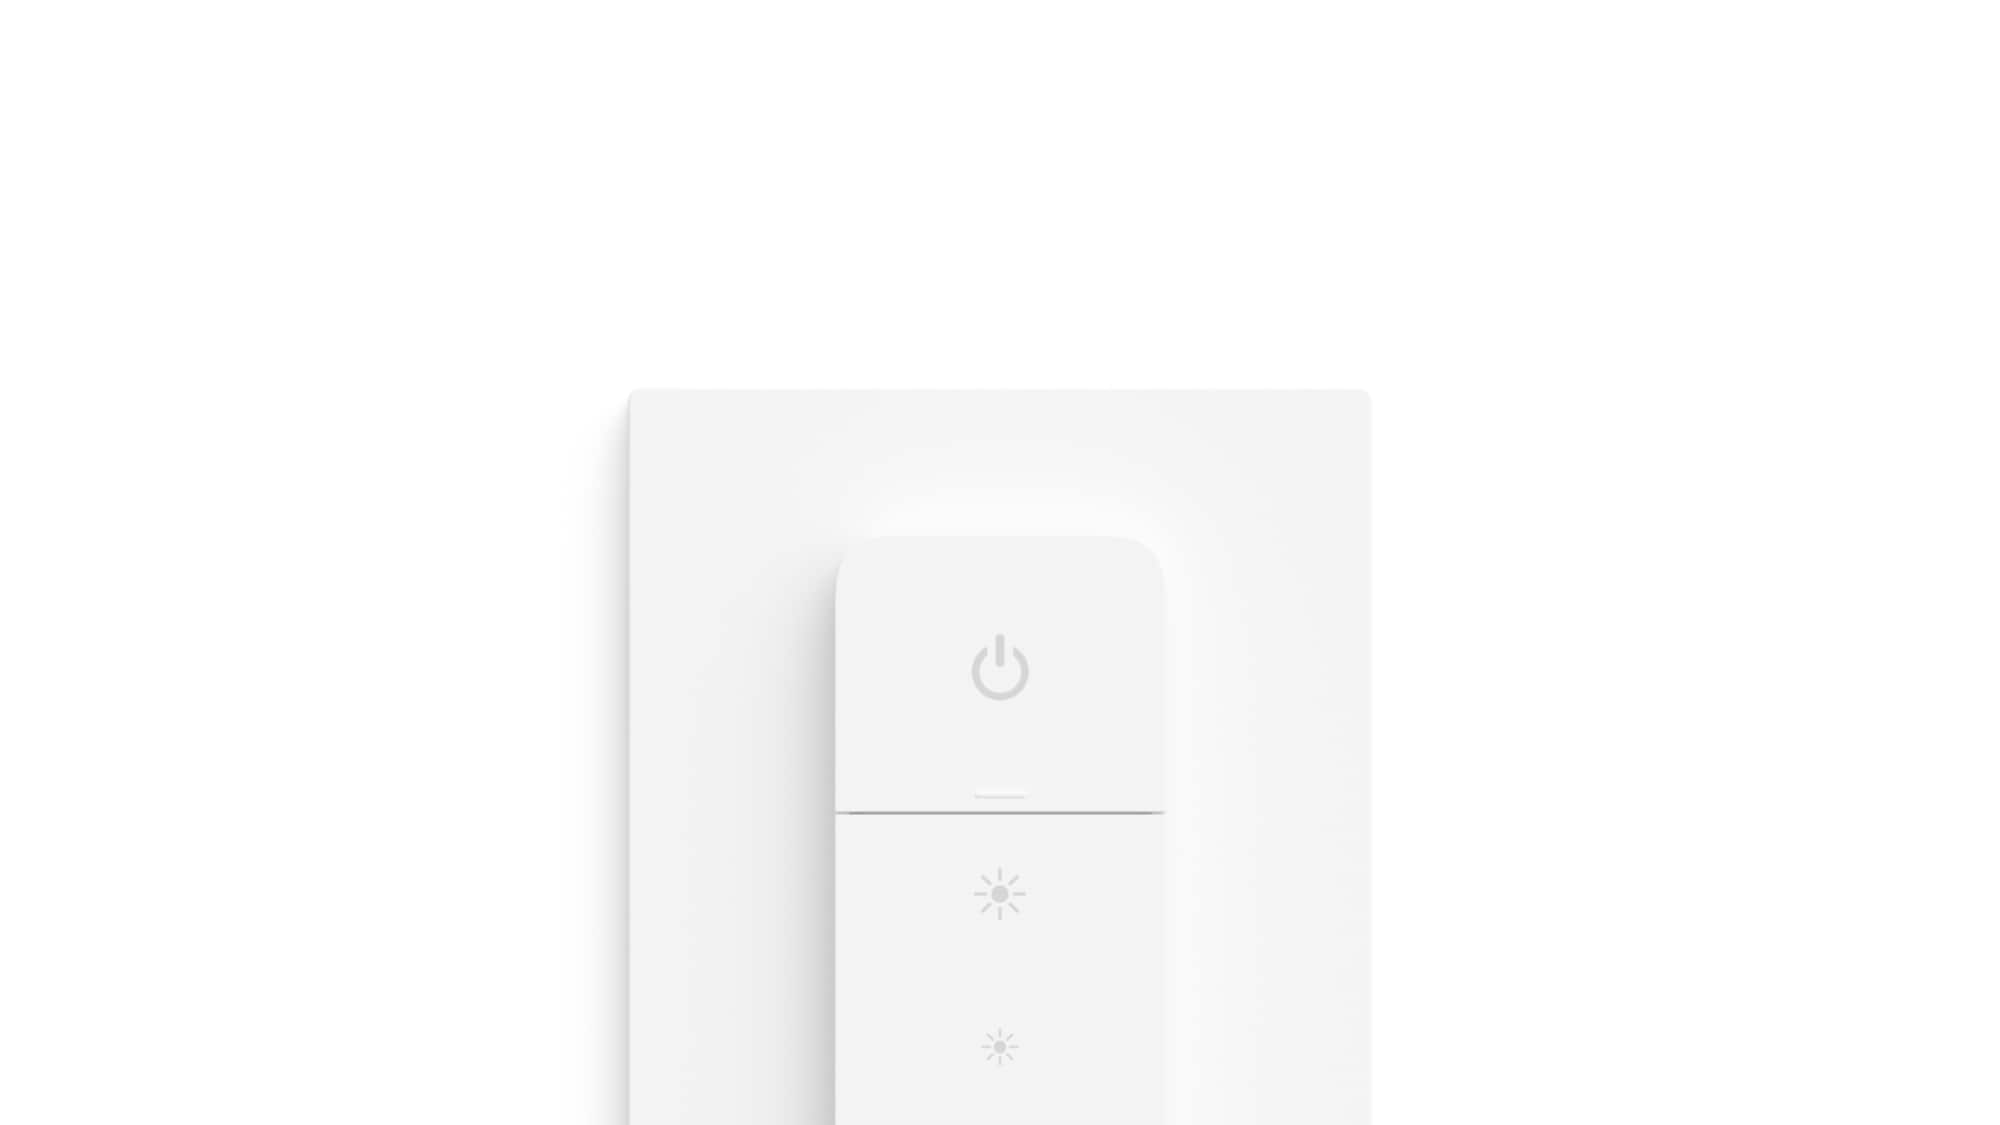 Accessoires Hue Plastique Blanc L 200 P 1.4 H 0.4 cm Avec fonction Bluetooth